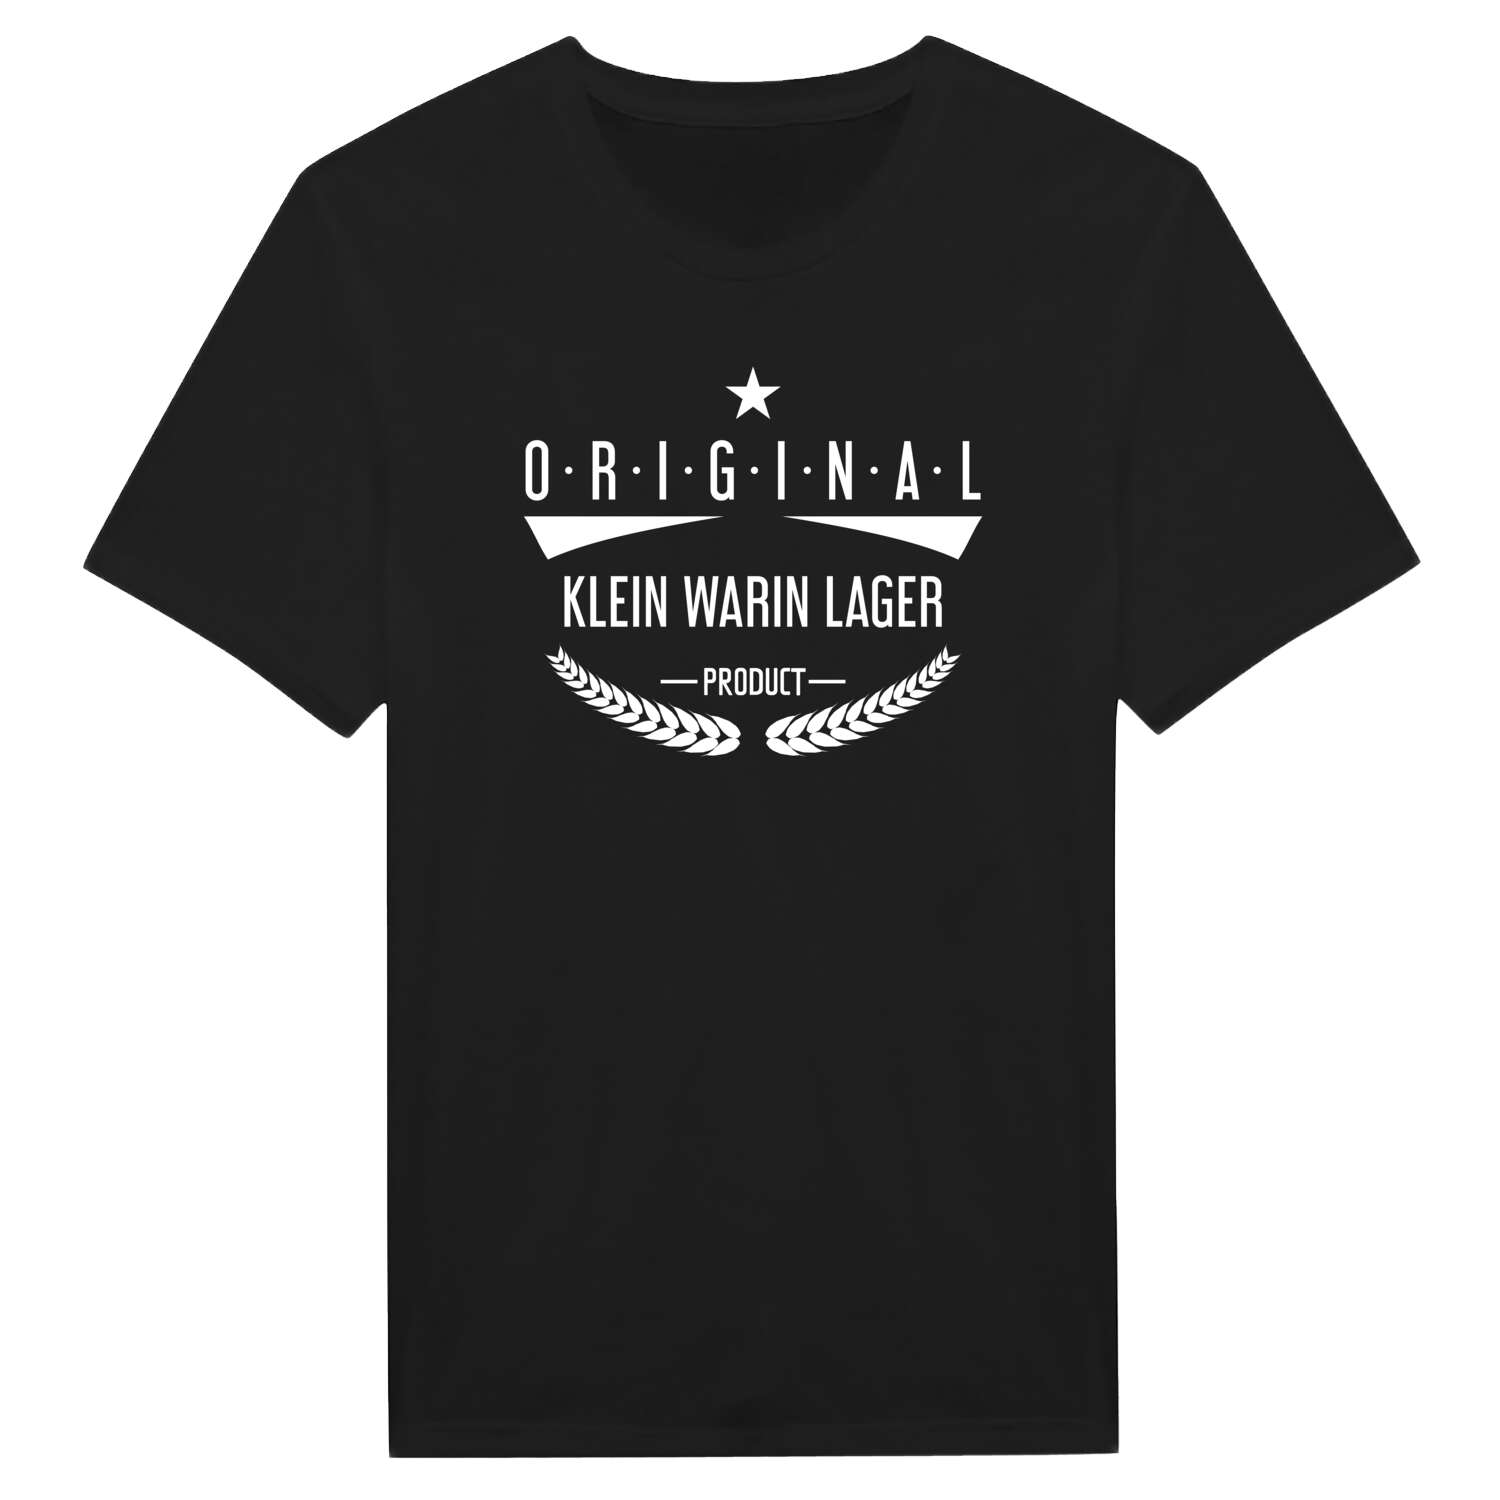 Klein Warin Lager T-Shirt »Original Product«